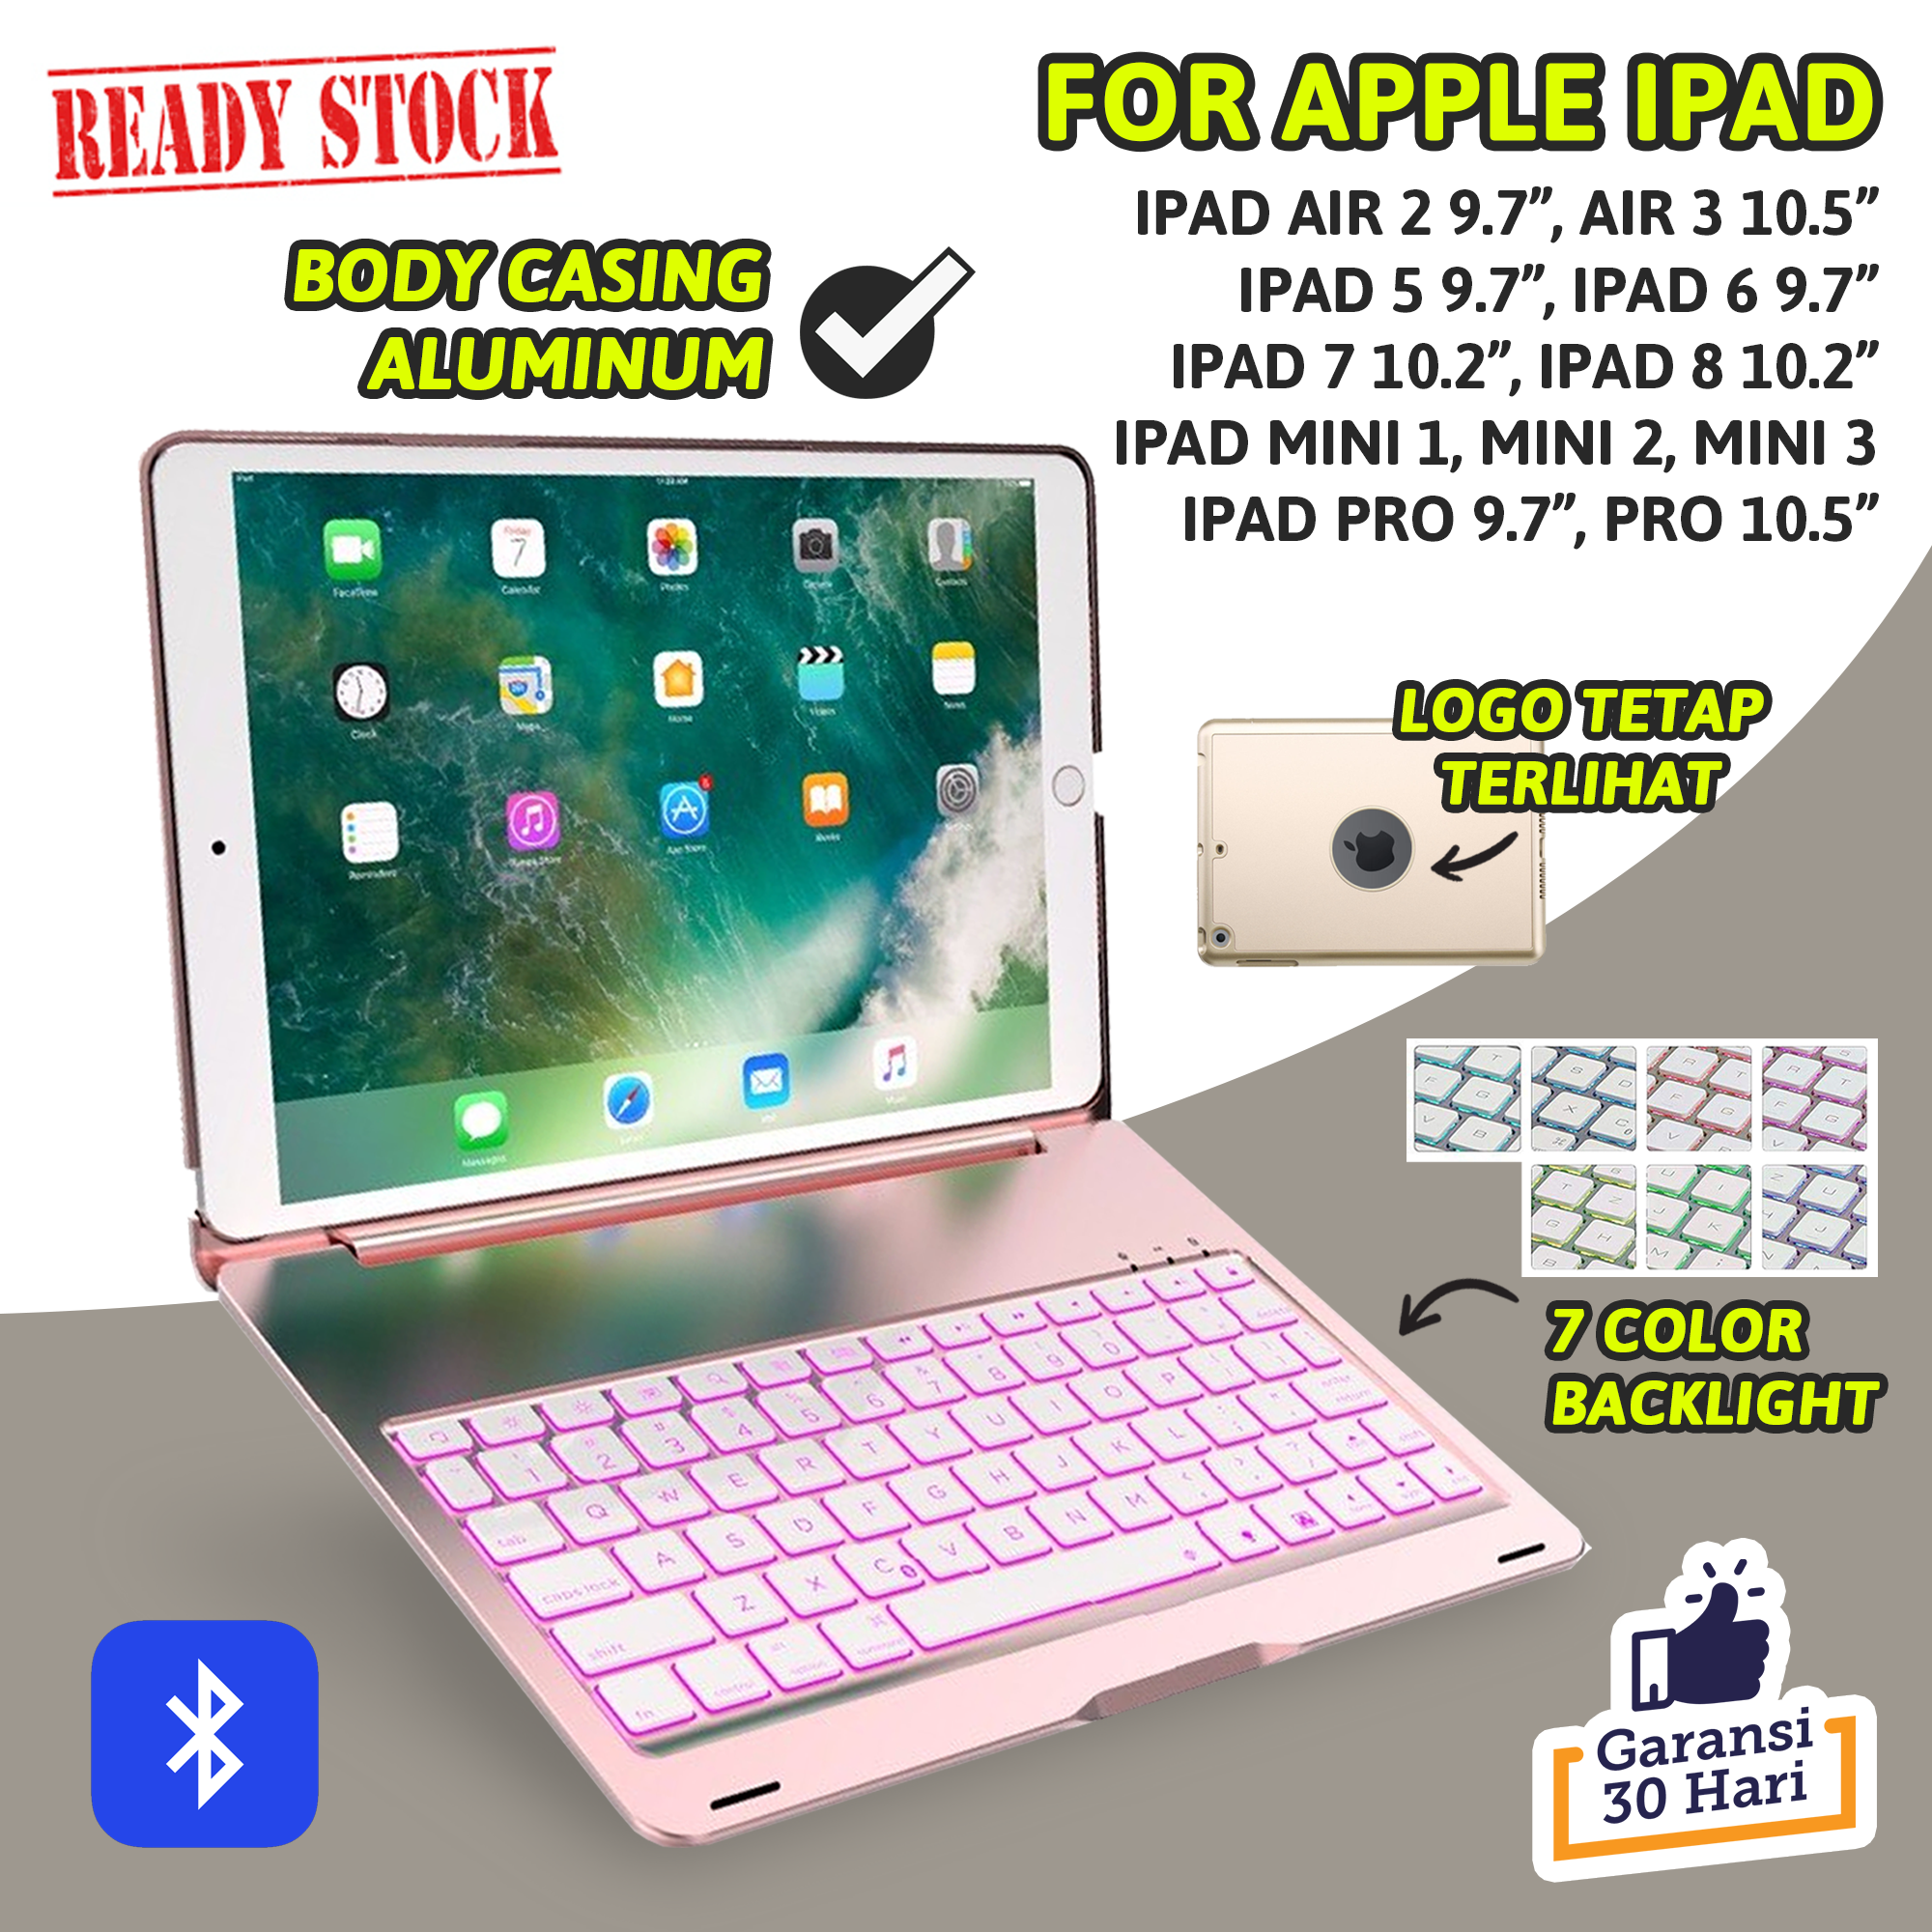 iPad 10.2in iPad Pro 12.9in /iPad Mini 5/4/ iPad Air/iPad Mini and Other Bluetooth Enable iPads/iPhones Bluetooth Keyboard Compatible with iPad 9.7in Black 